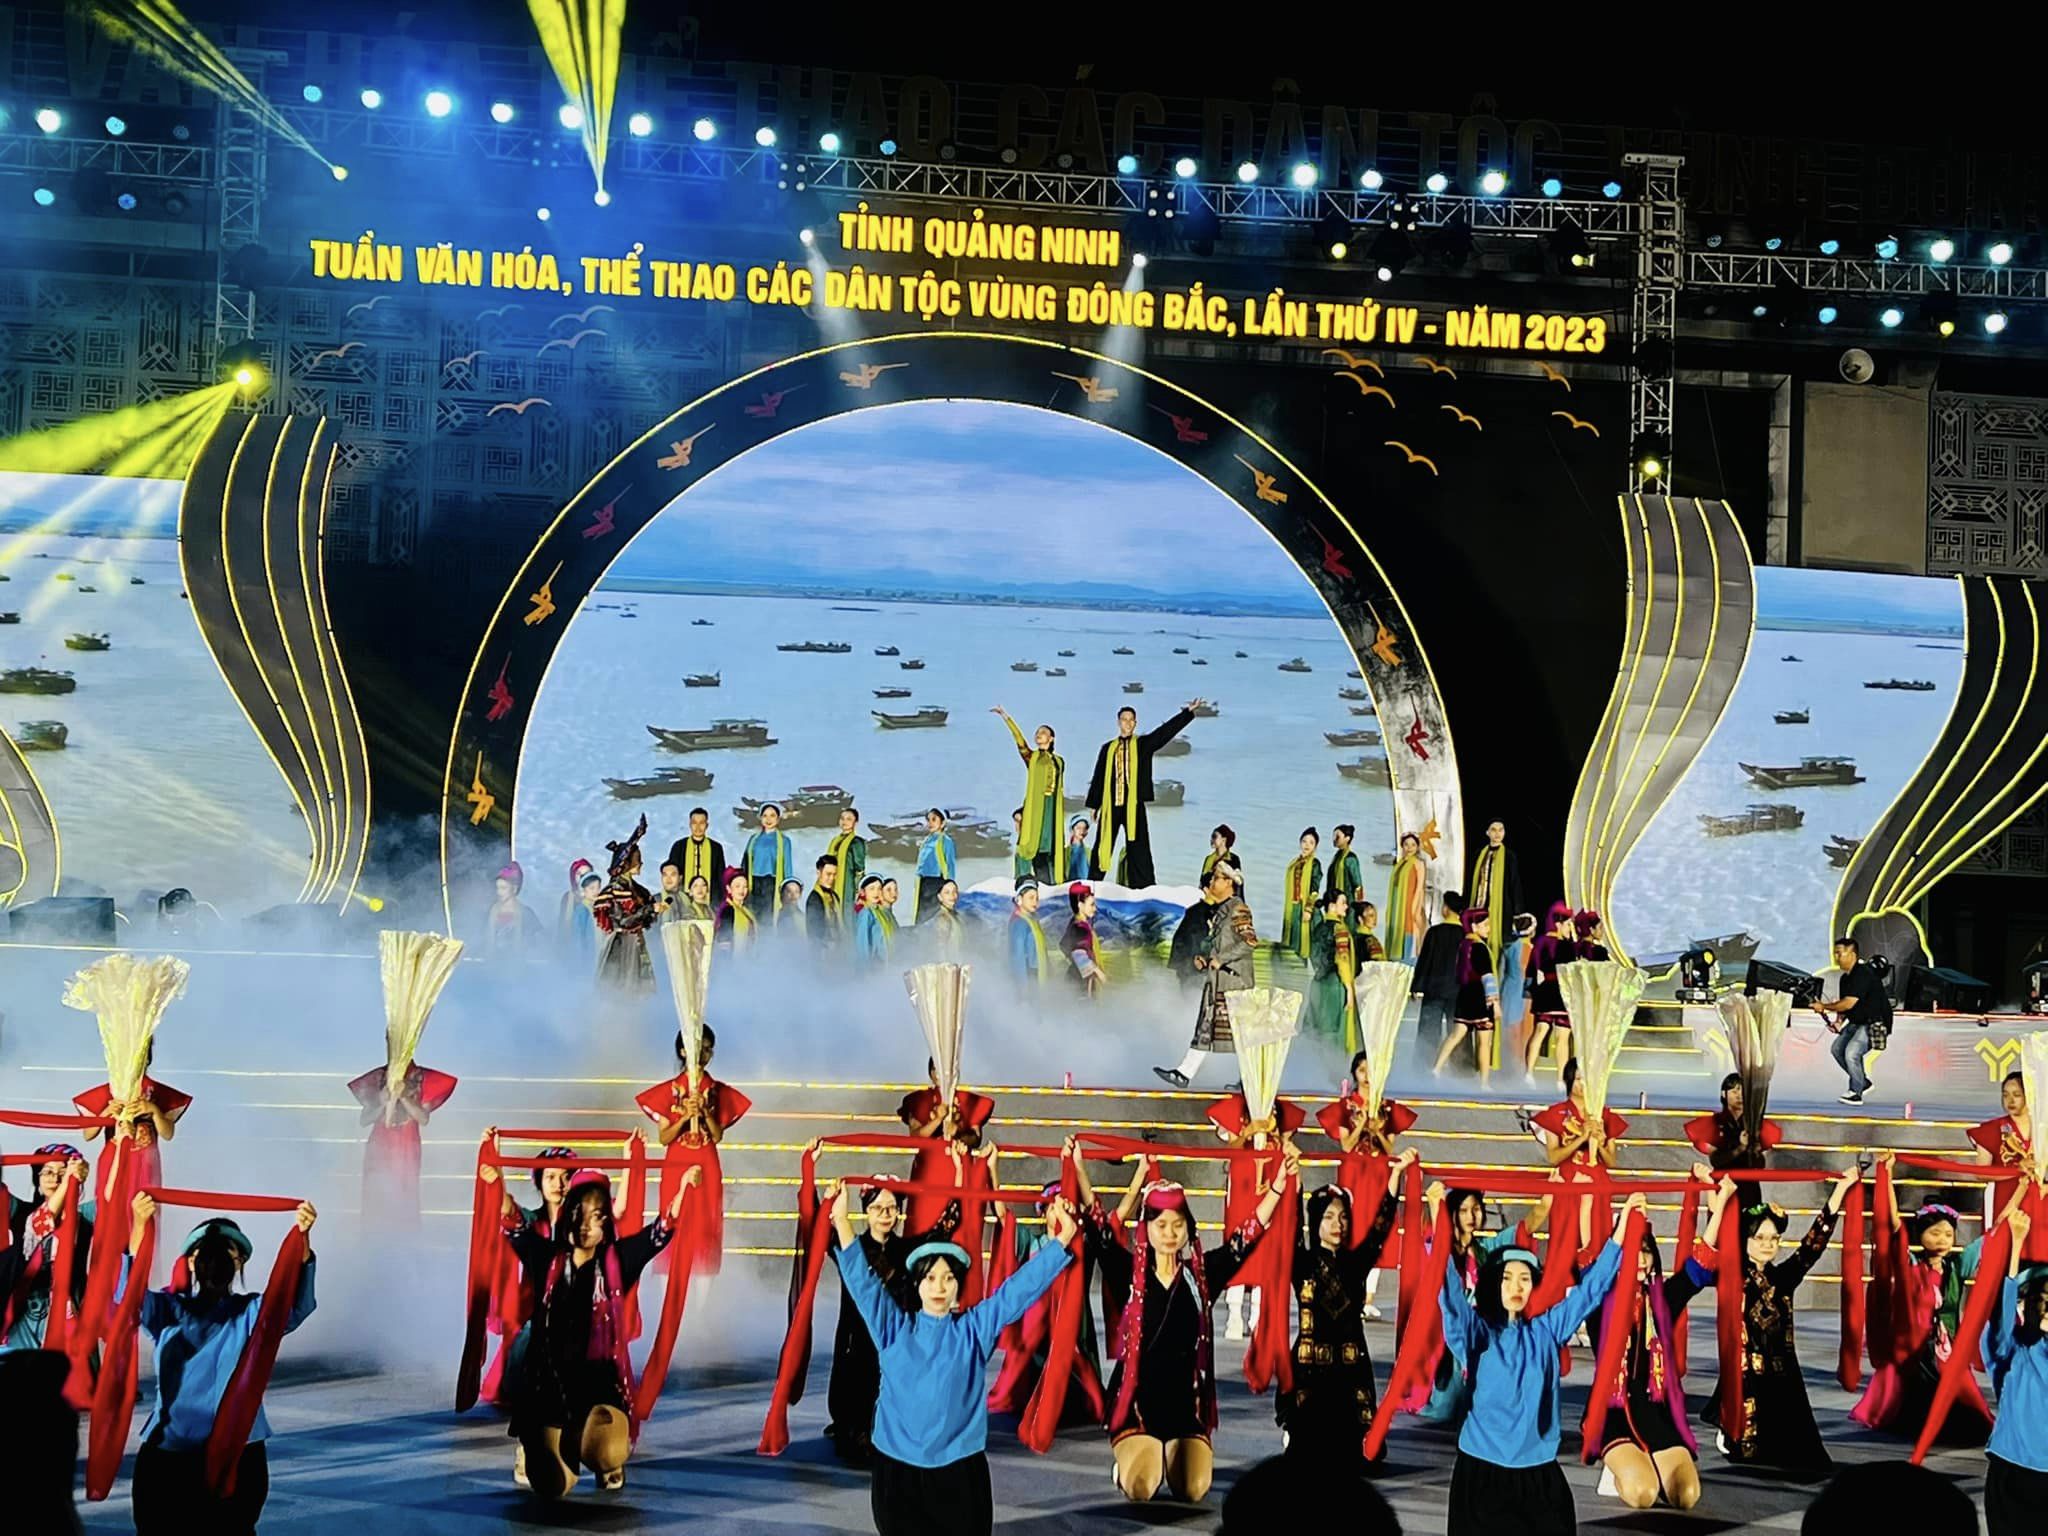 Khai mạc Tuần Văn hoá, Thể thao các dân tộc vùng Đông Bắc tỉnh Quảng Ninh lần thứ IV - Năm 2023